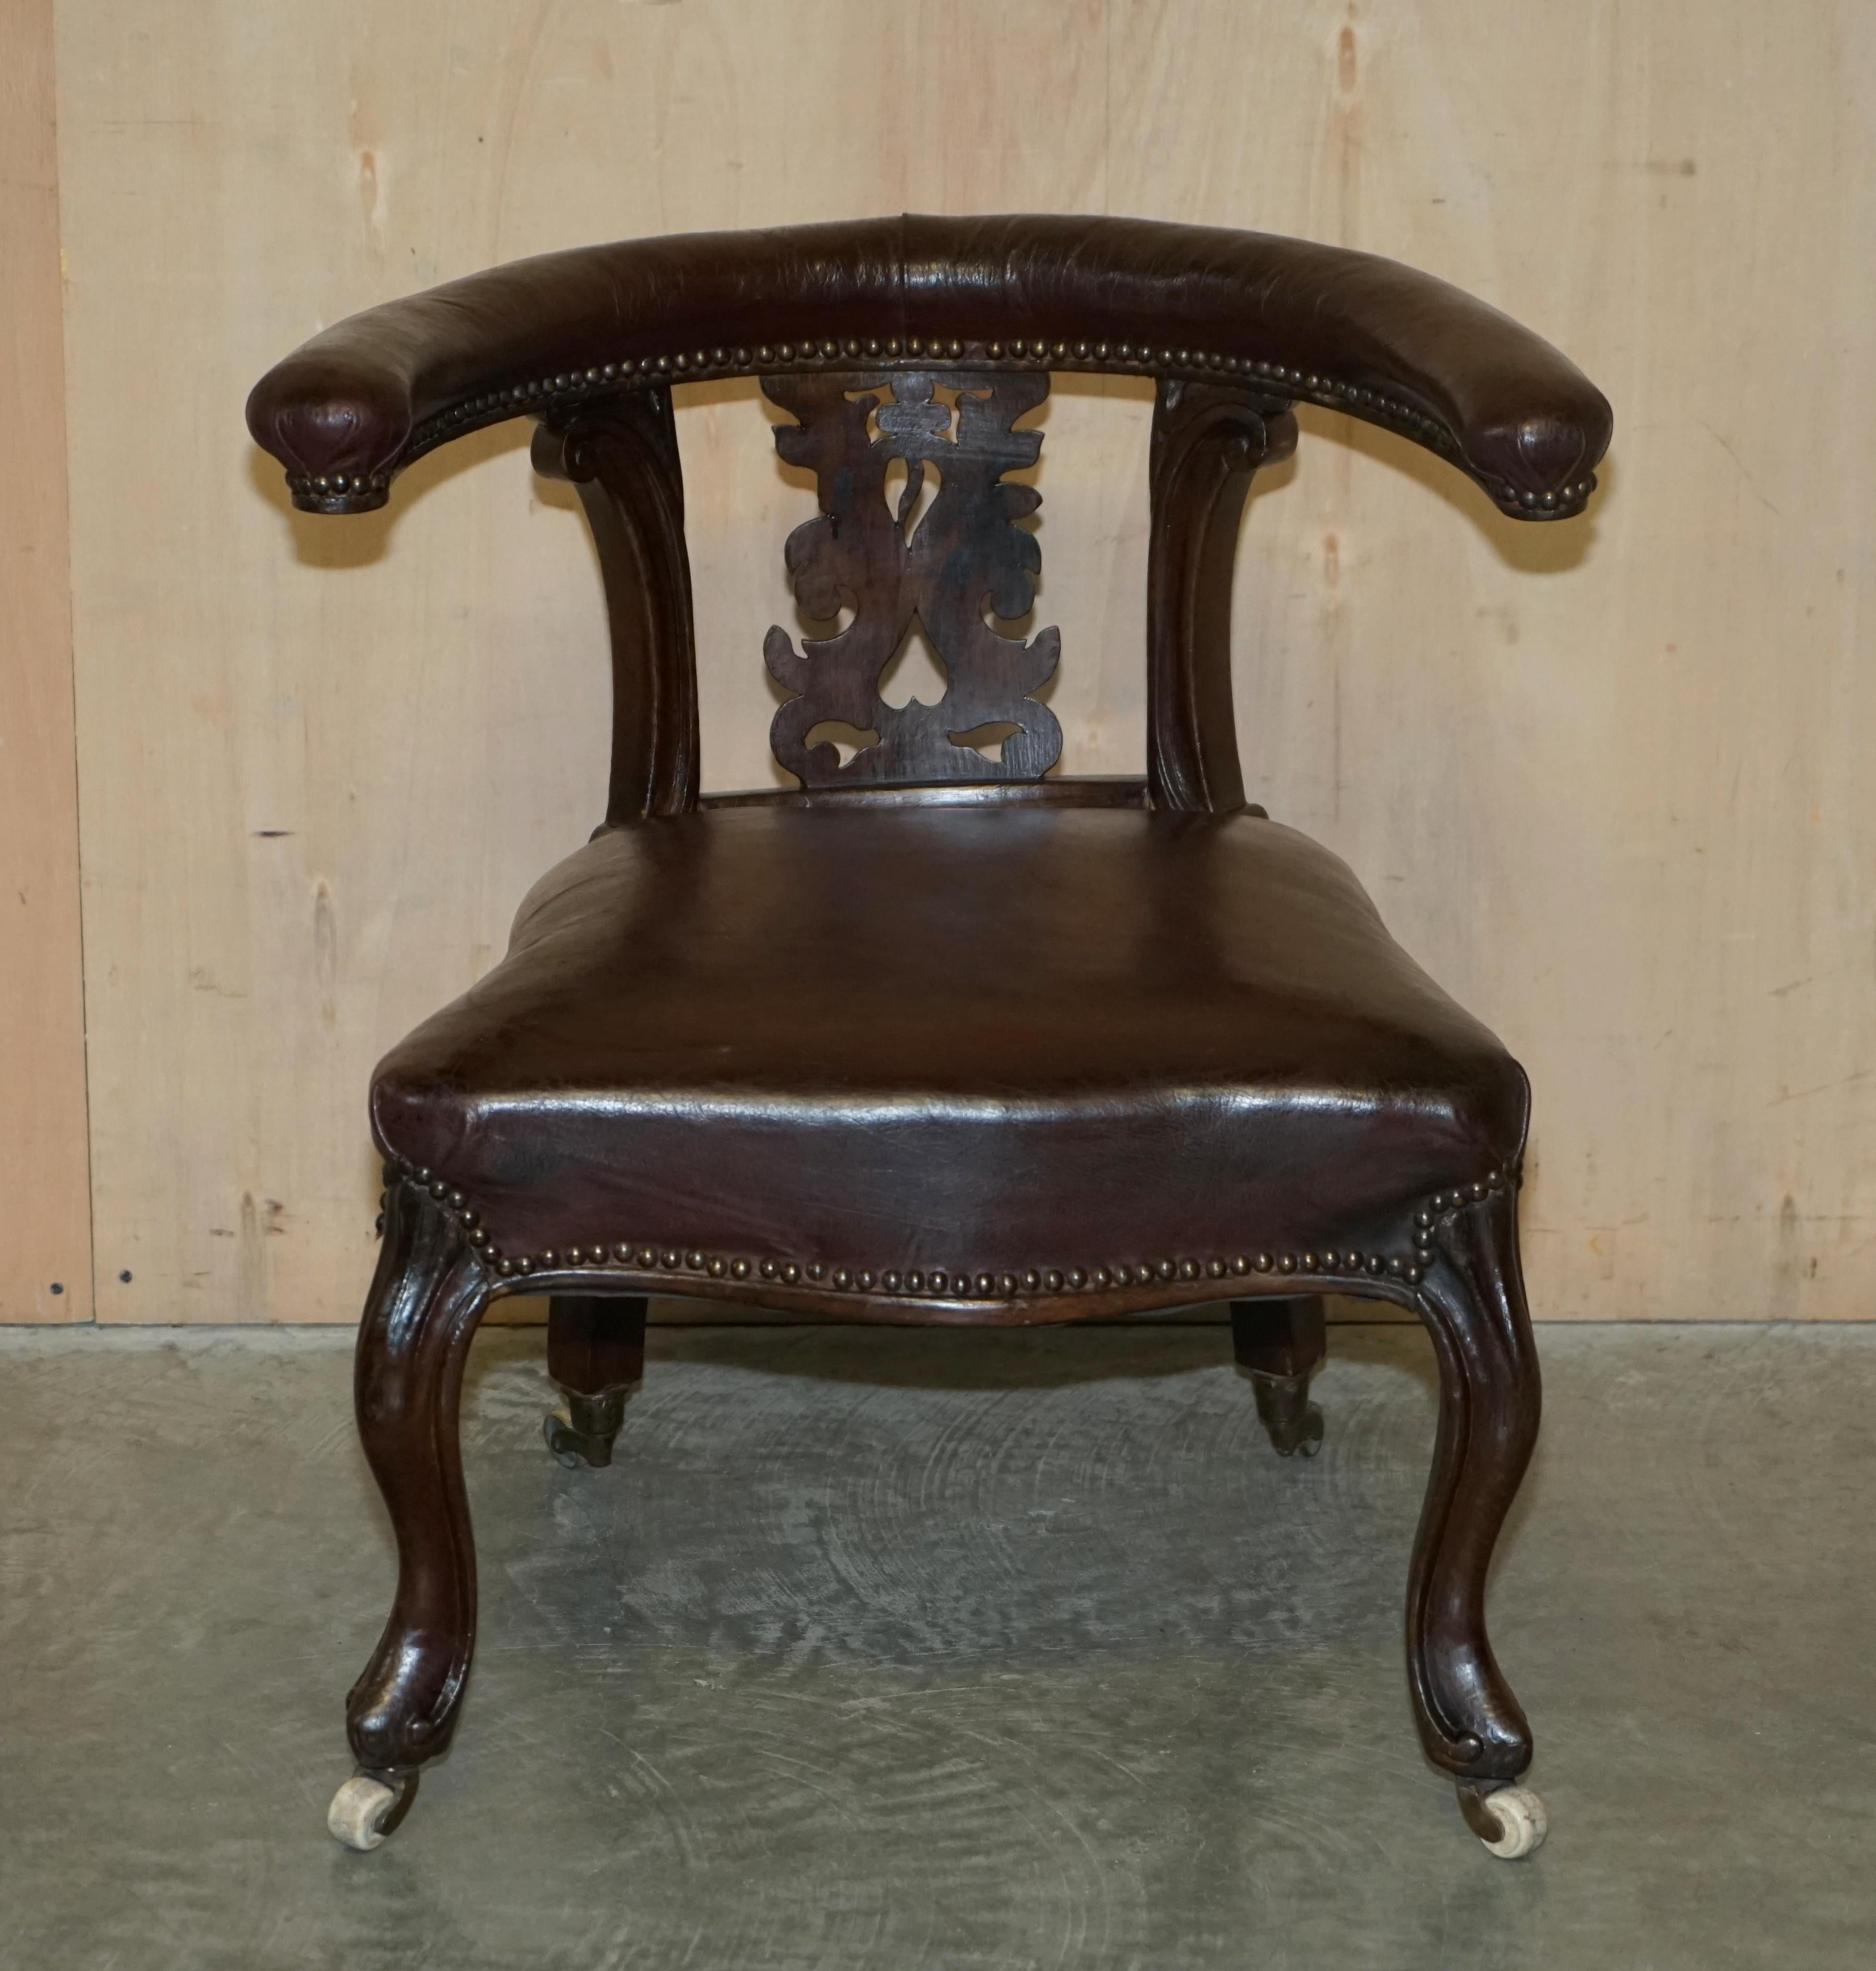 Nous sommes ravis d'offrir à la vente cet important fauteuil William IV Cockfighting, fabriqué à la main en Angleterre vers 1830.

Il s'agit vraiment d'un fauteuil exquis, d'un pur meuble d'art sous tous les angles, dont le design remonte au XVIIIe